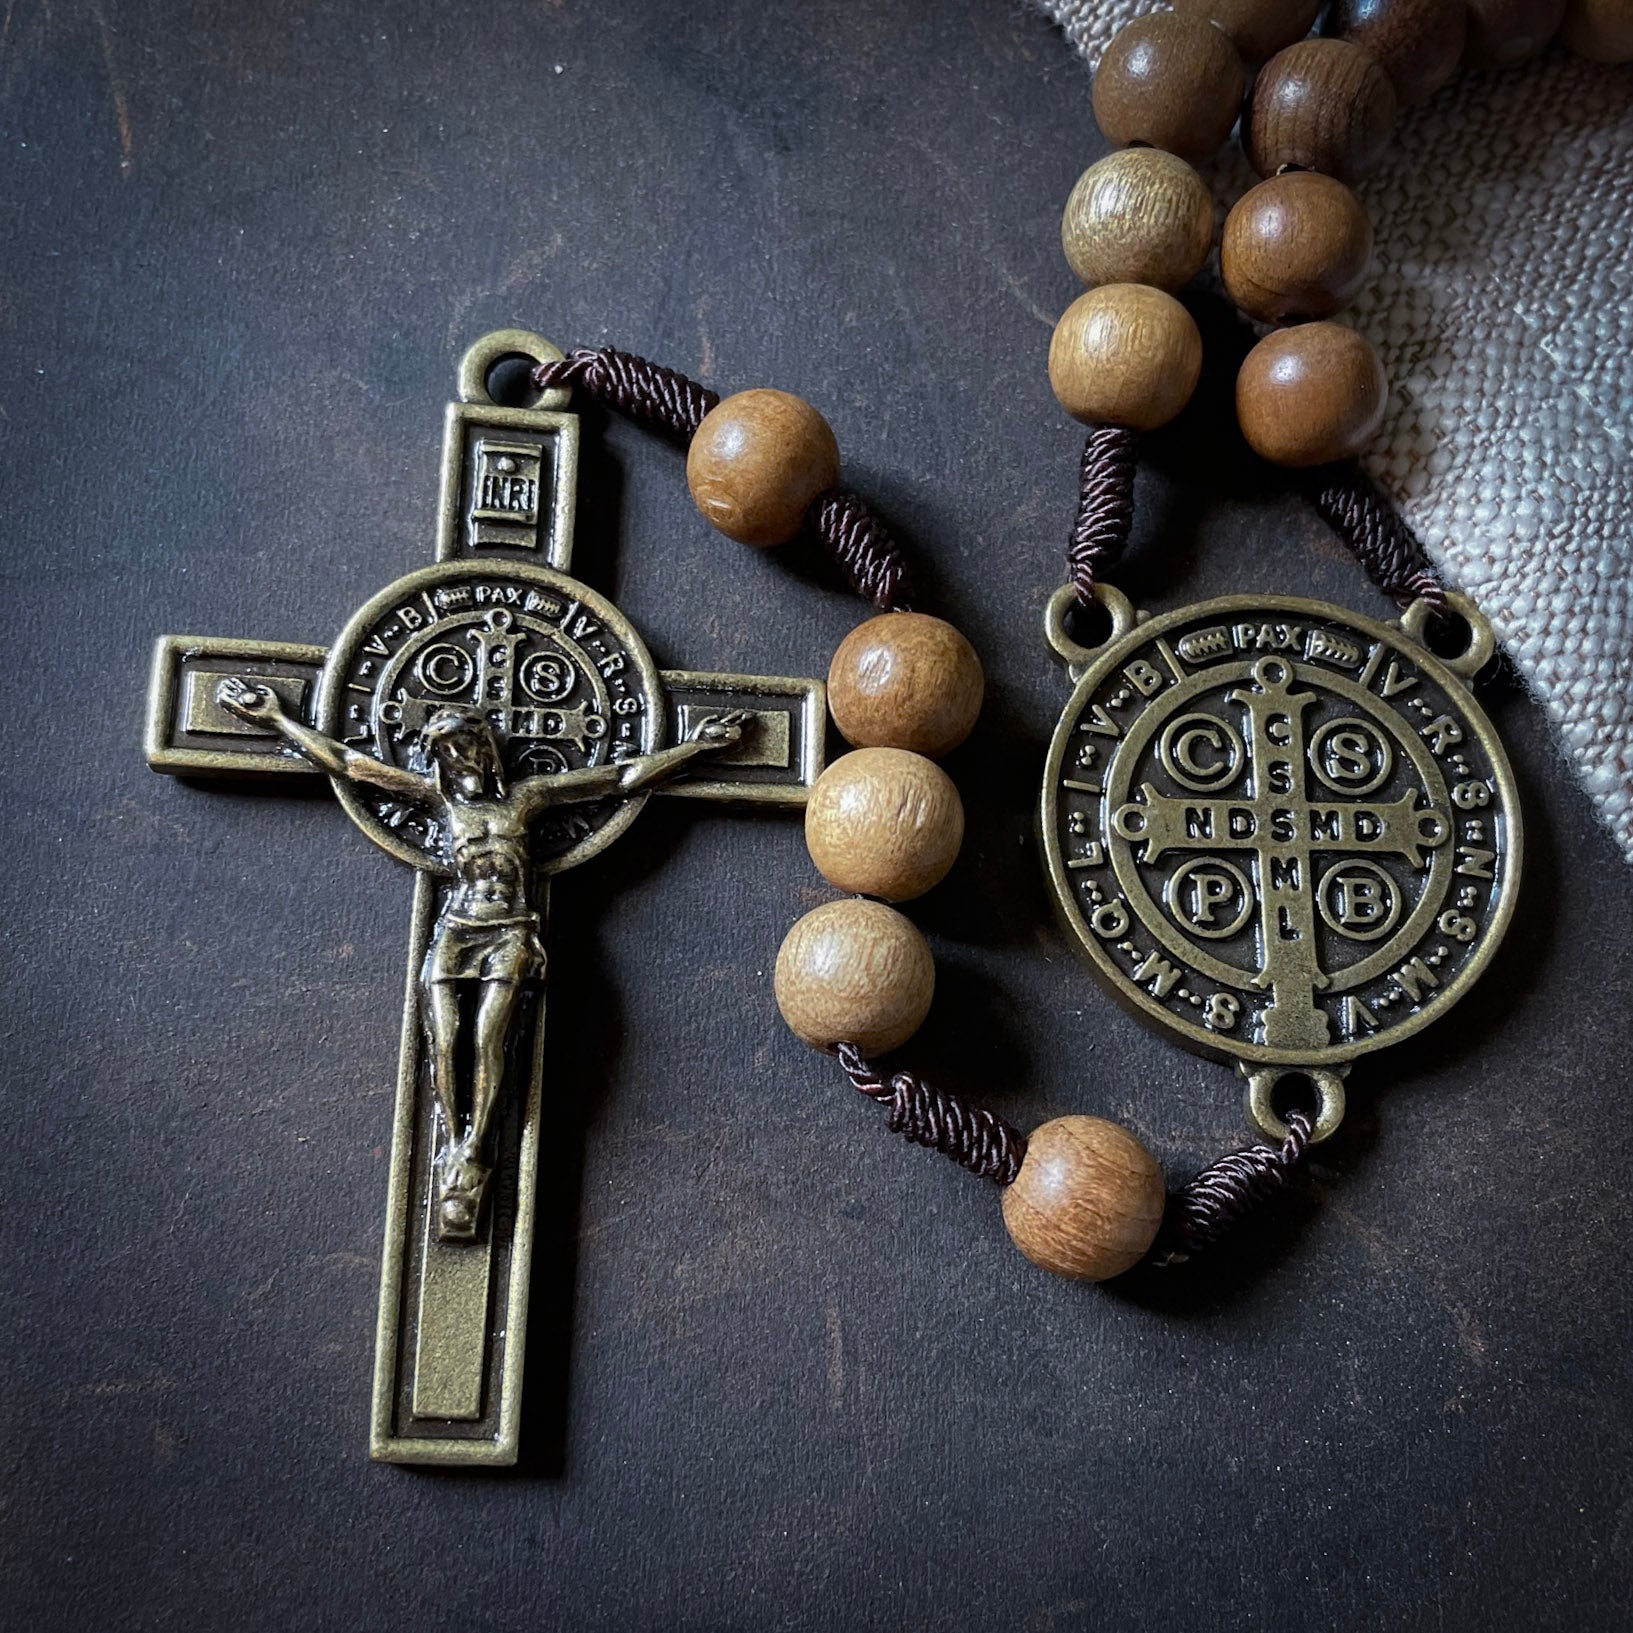 Handmade Wooden Rosary - St. Benedict Design - Bronze Color